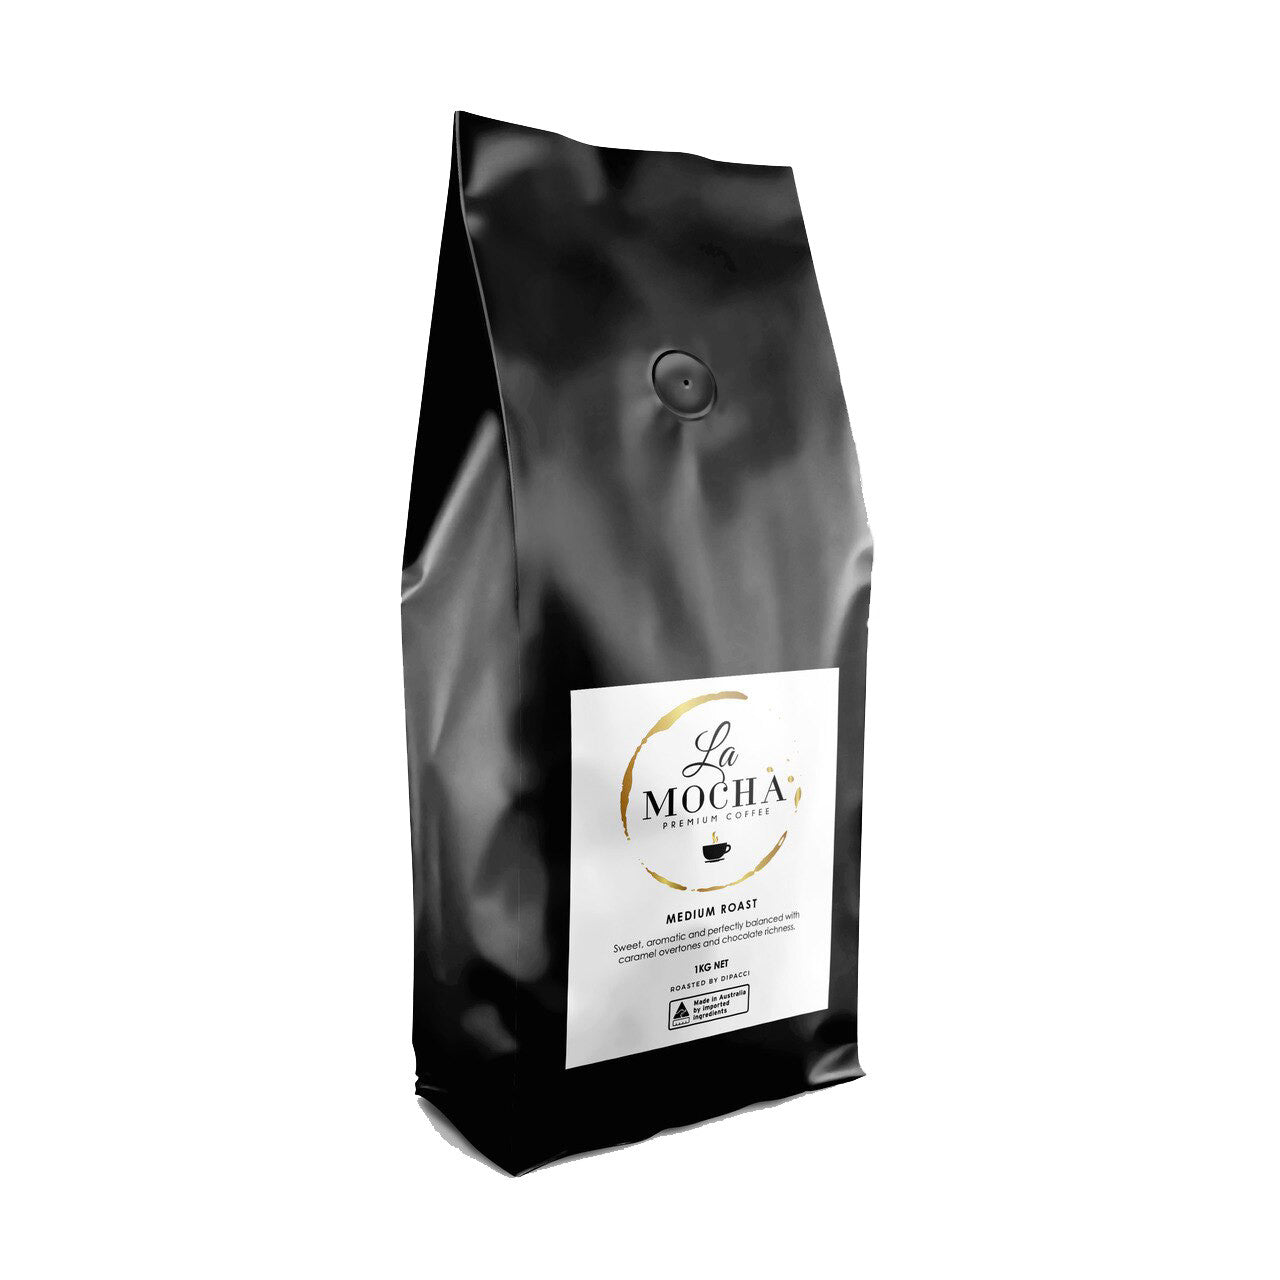 Premium Coffee La Mocha